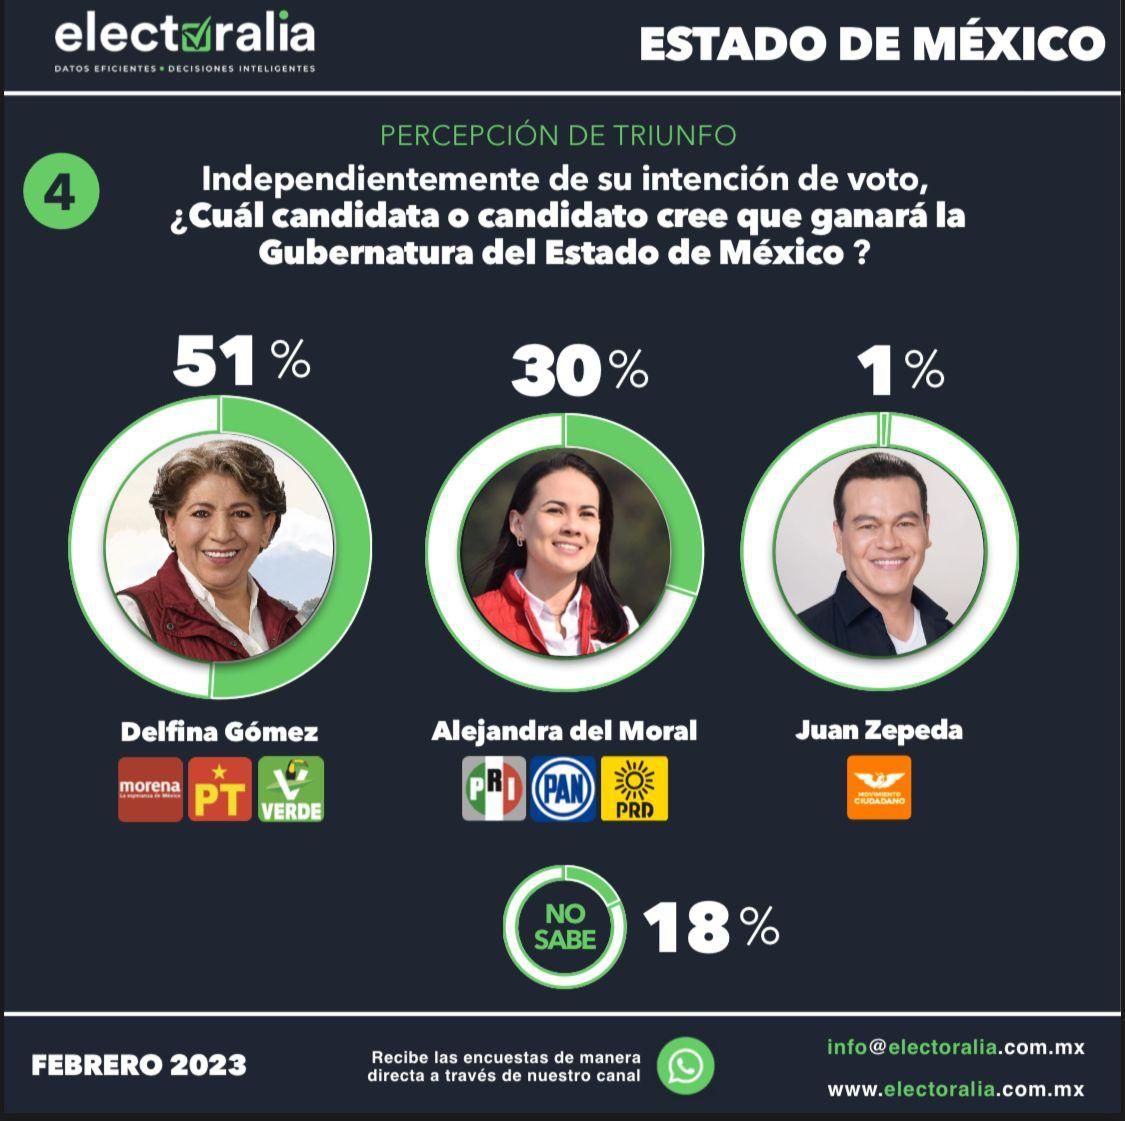 Delfina Gómez, imparable en las encuestas; se fortalece la percepción de triunfo en más de 20 puntos sobre Alejandra del Moral